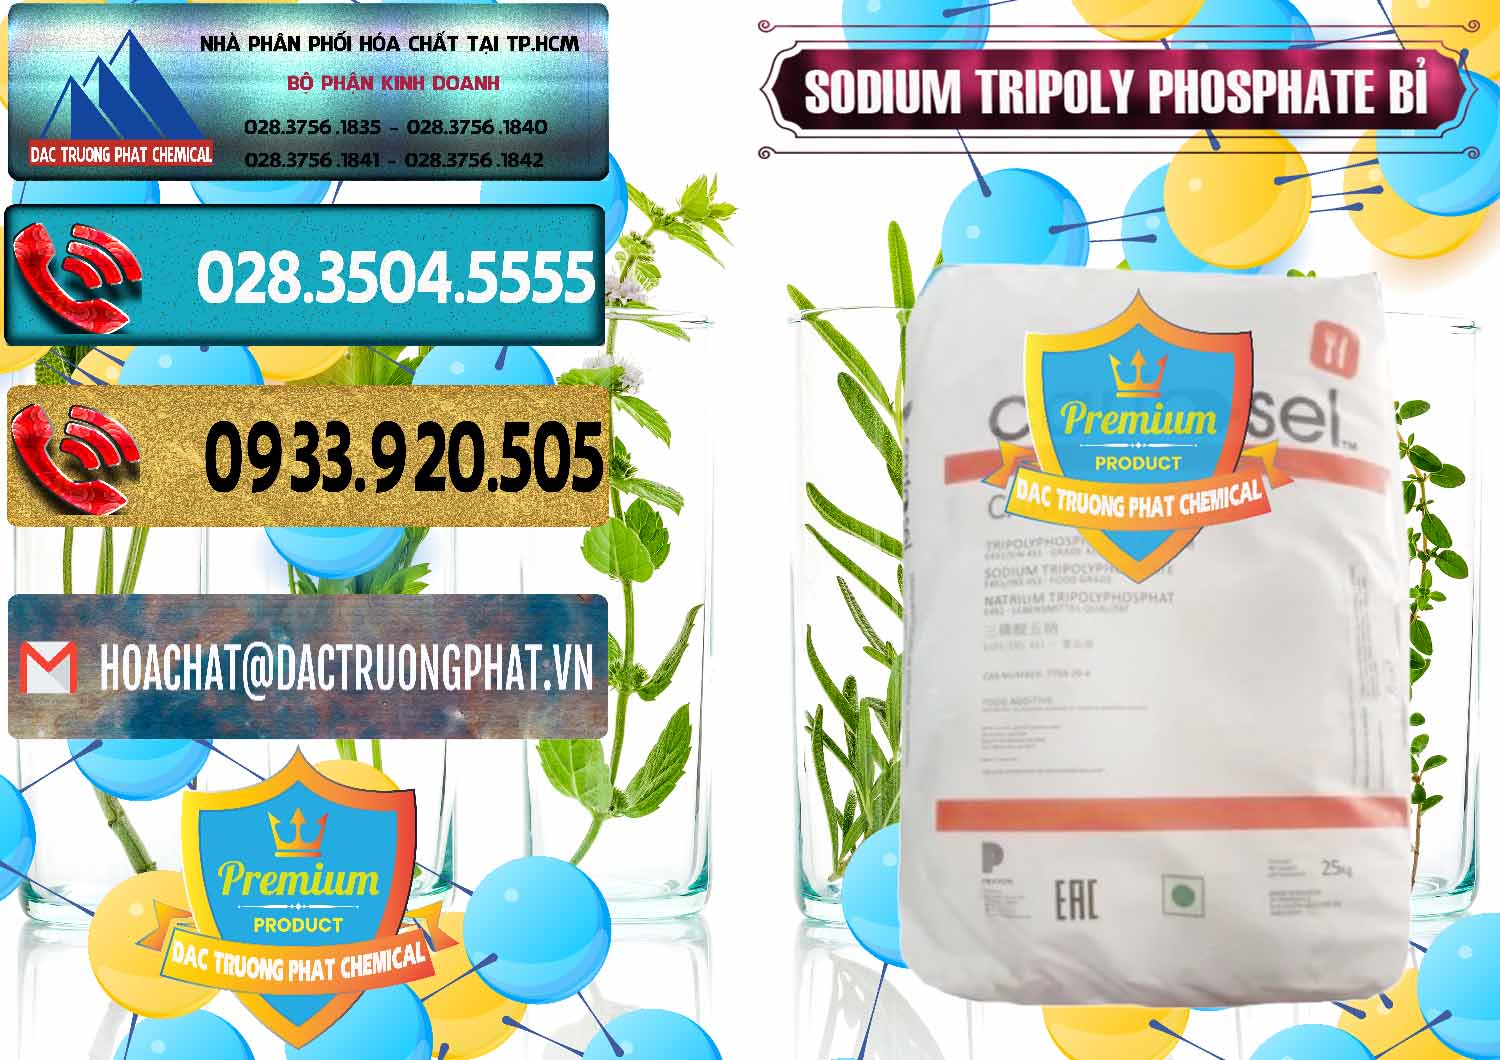 Nơi chuyên kinh doanh & bán Sodium Tripoly Phosphate - STPP Carfosel 991 Bỉ Belgium - 0429 - Công ty kinh doanh & cung cấp hóa chất tại TP.HCM - hoachatdetnhuom.com